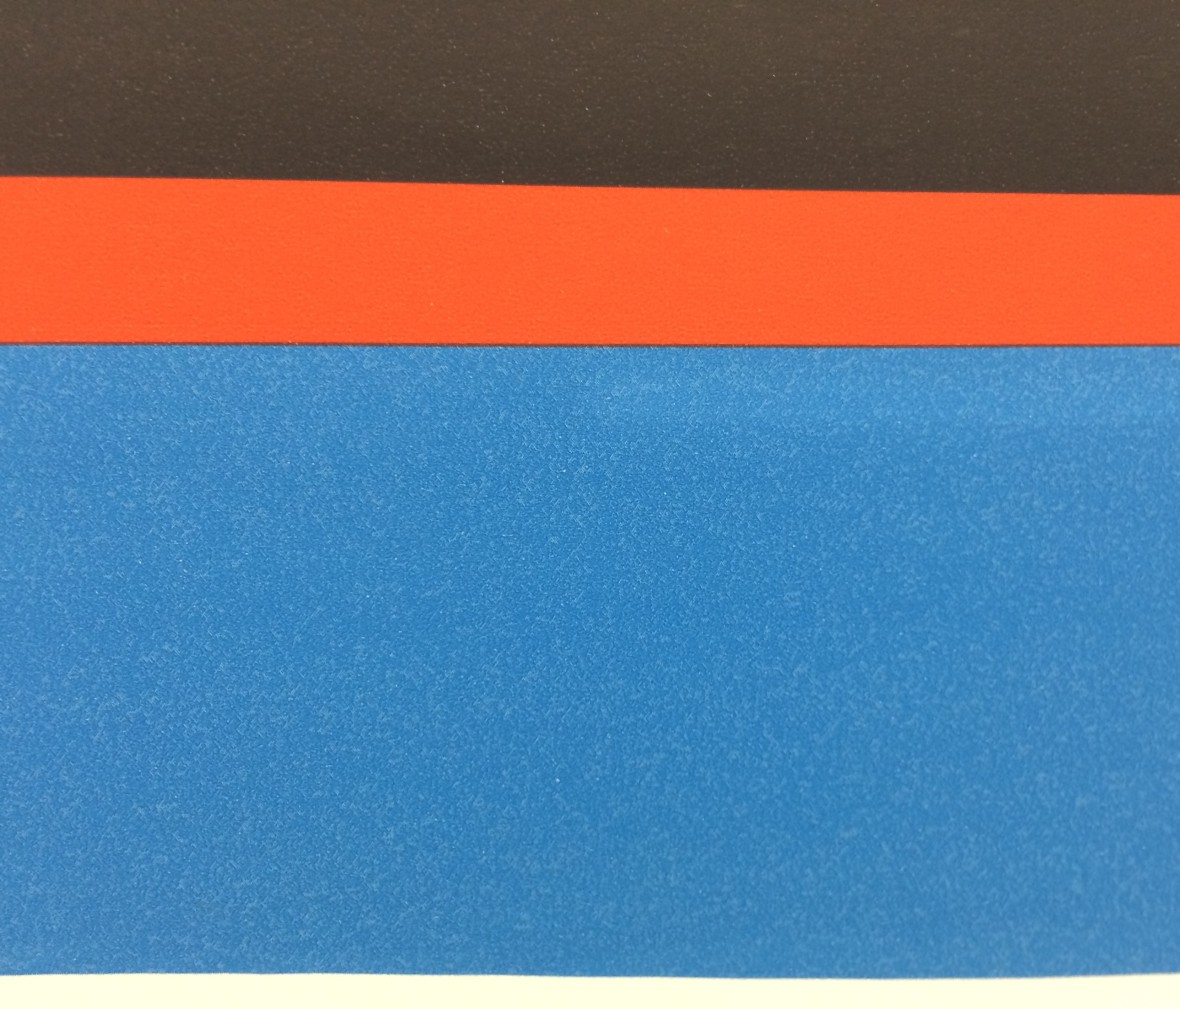 格莱美壁纸 梦想乐园系列 KJ51612型号 进口环保纯纸墙纸 细节展示